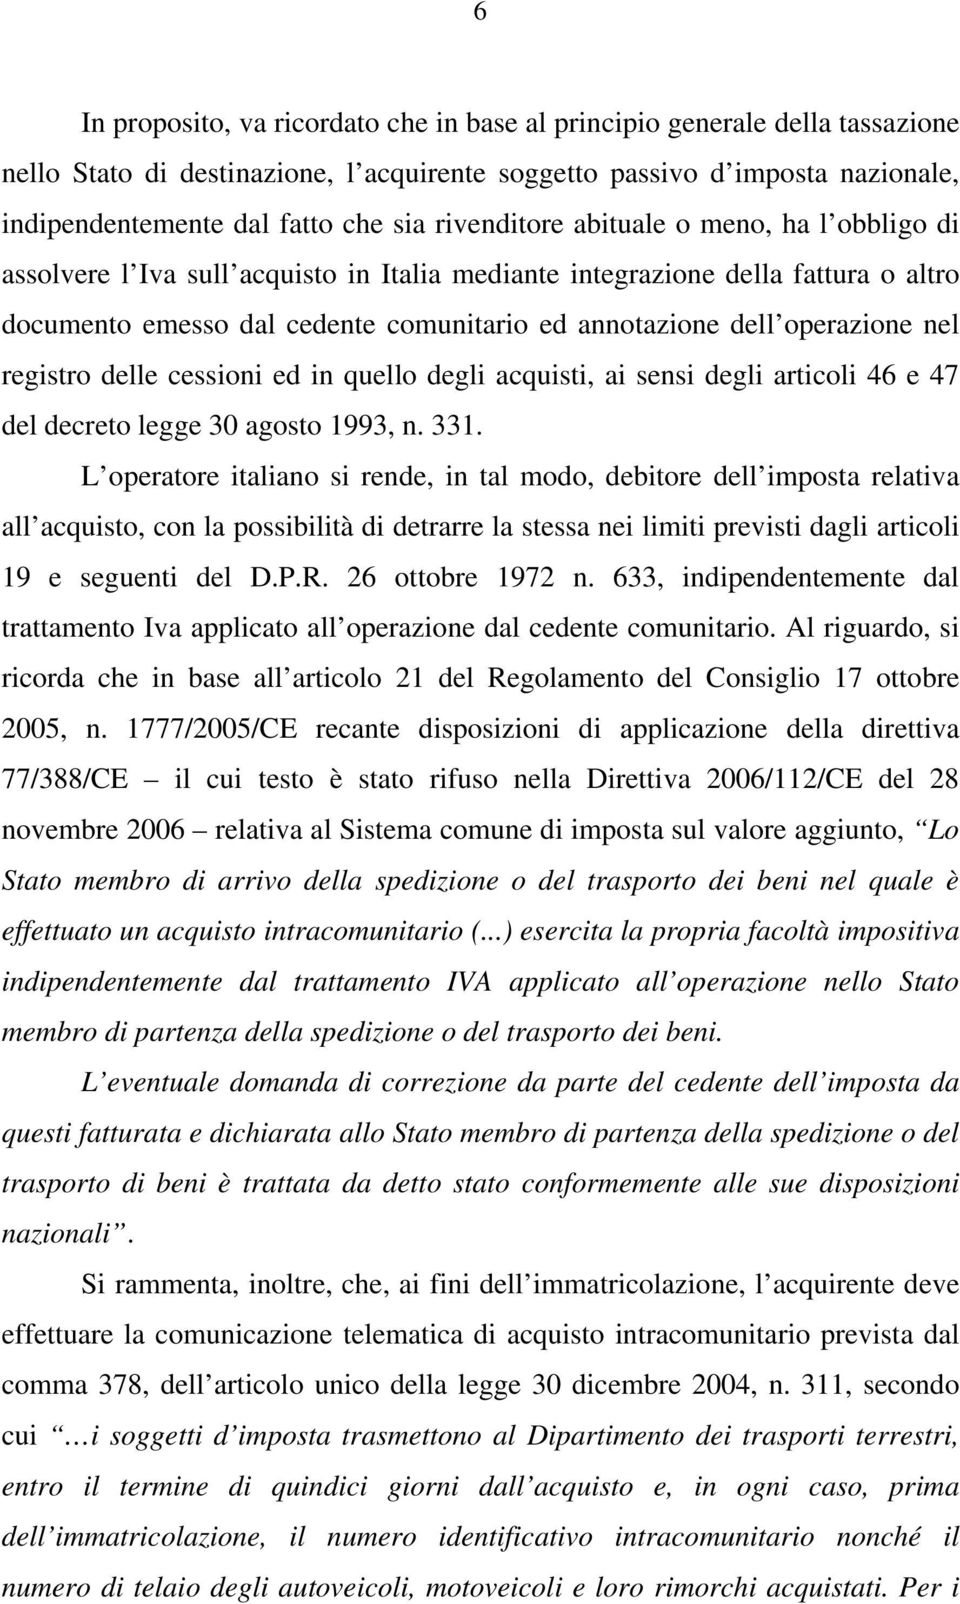 operazione nel registro delle cessioni ed in quello degli acquisti, ai sensi degli articoli 46 e 47 del decreto legge 30 agosto 1993, n. 331.